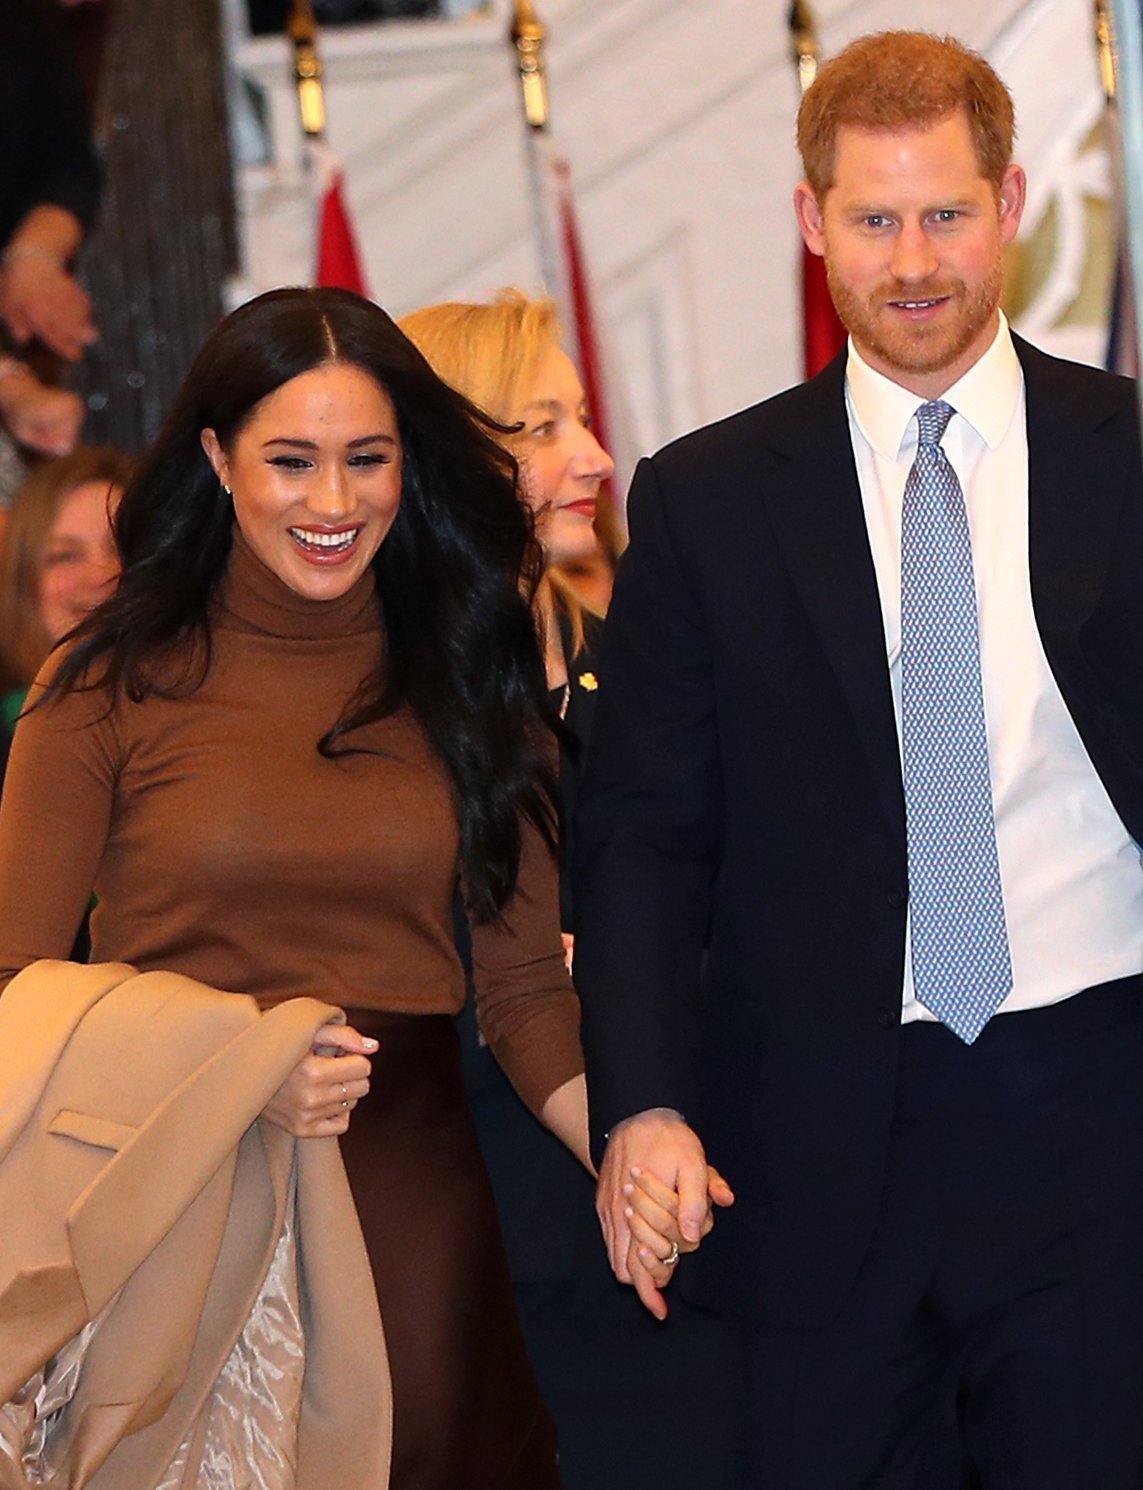 Le duc et la duchesse de Sussex partent après leur visite à la Maison du Canada, au centre de Londres, pour rencontrer le haut-commissaire du Canada au Royaume-Uni le mardi 7 janvier 2020 | Photo : Getty Images